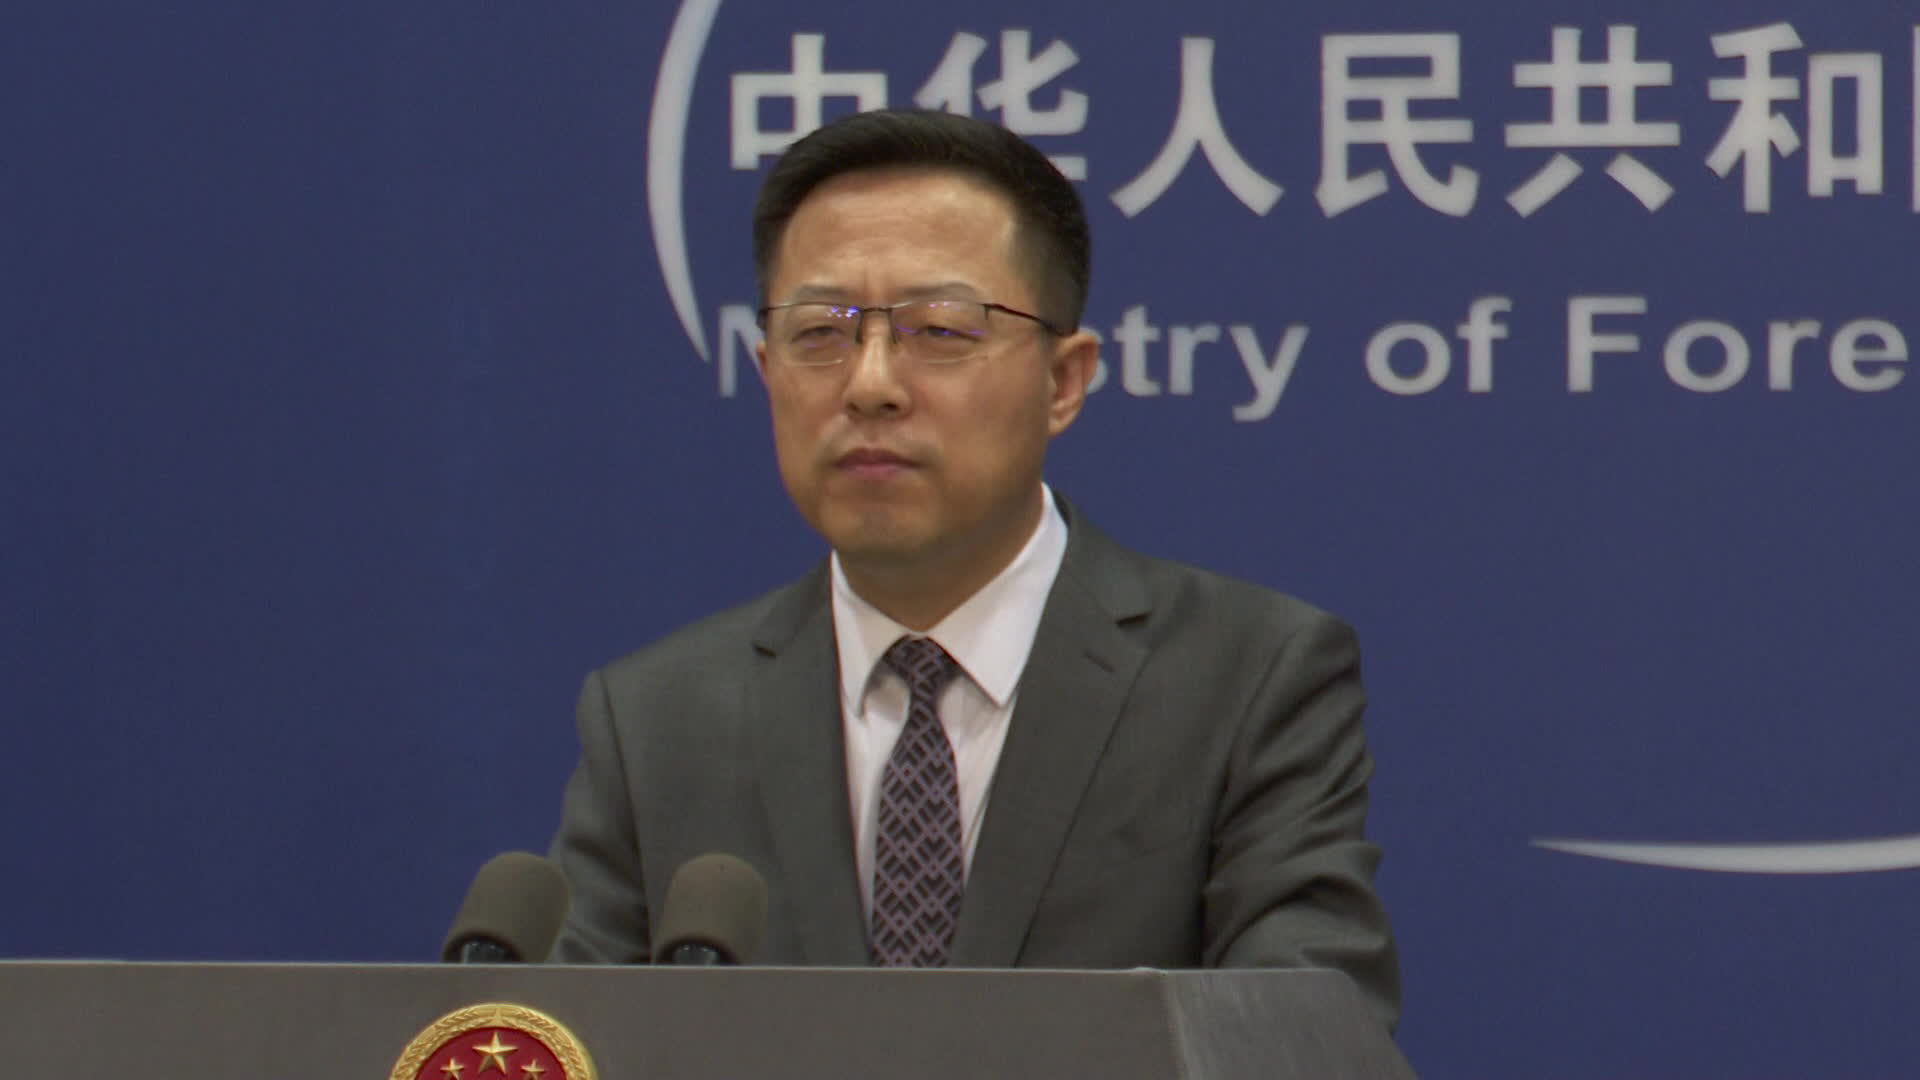 자오리젠 중국 외교부 대변인은 27일 브리핑에서 “새 관리는 과거의 부채를 외면할 수 없다”며 사드 문제에 대한 한국 정부의 입장 유지를 요구했다.